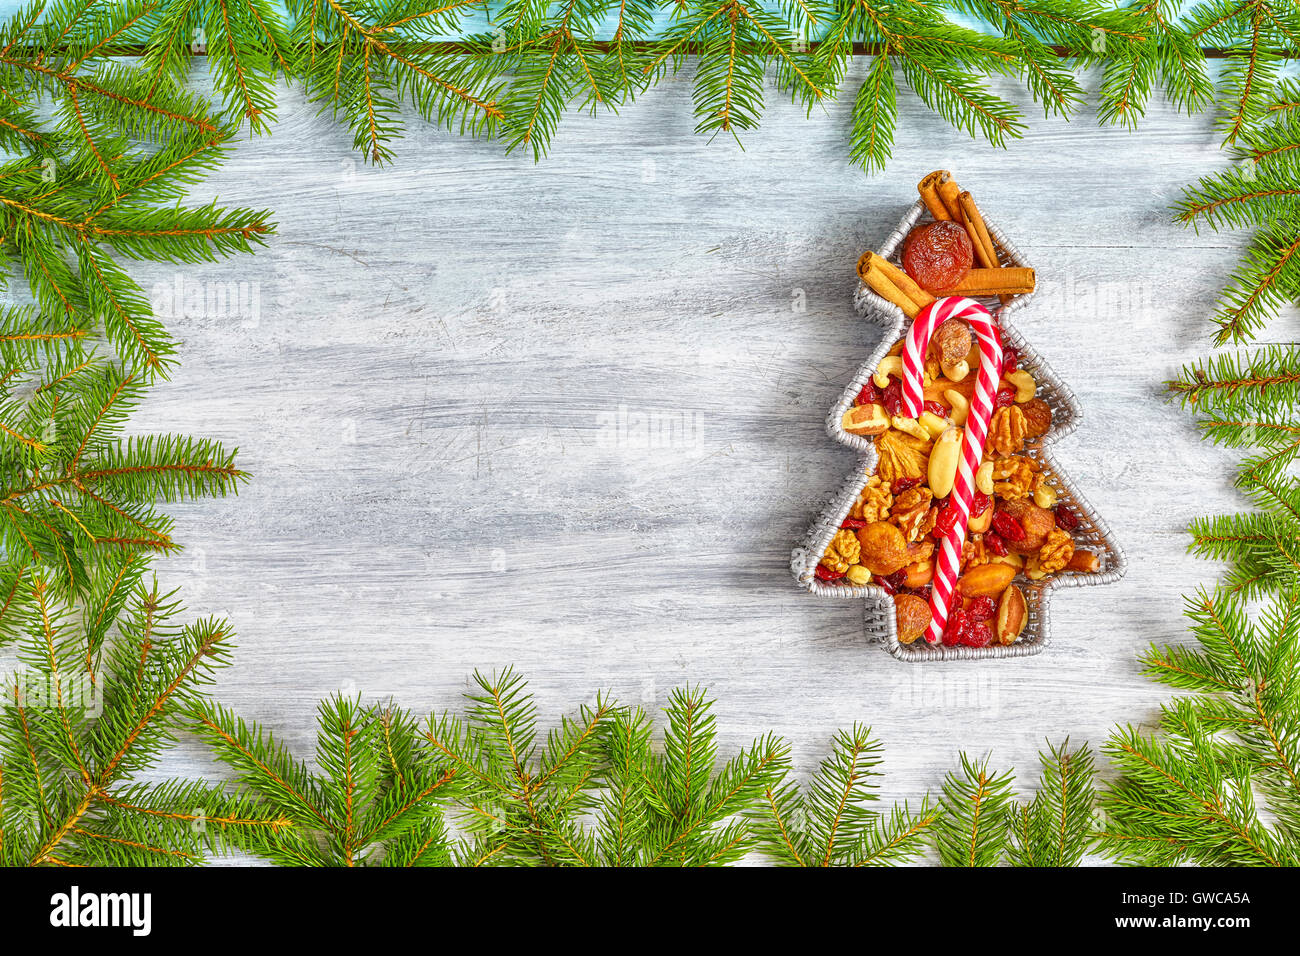 En forme d'arbre de Noël récipient rempli de fruits secs sur une table en bois rustique, vue du dessus avec l'exemplaire de l'espace. Banque D'Images